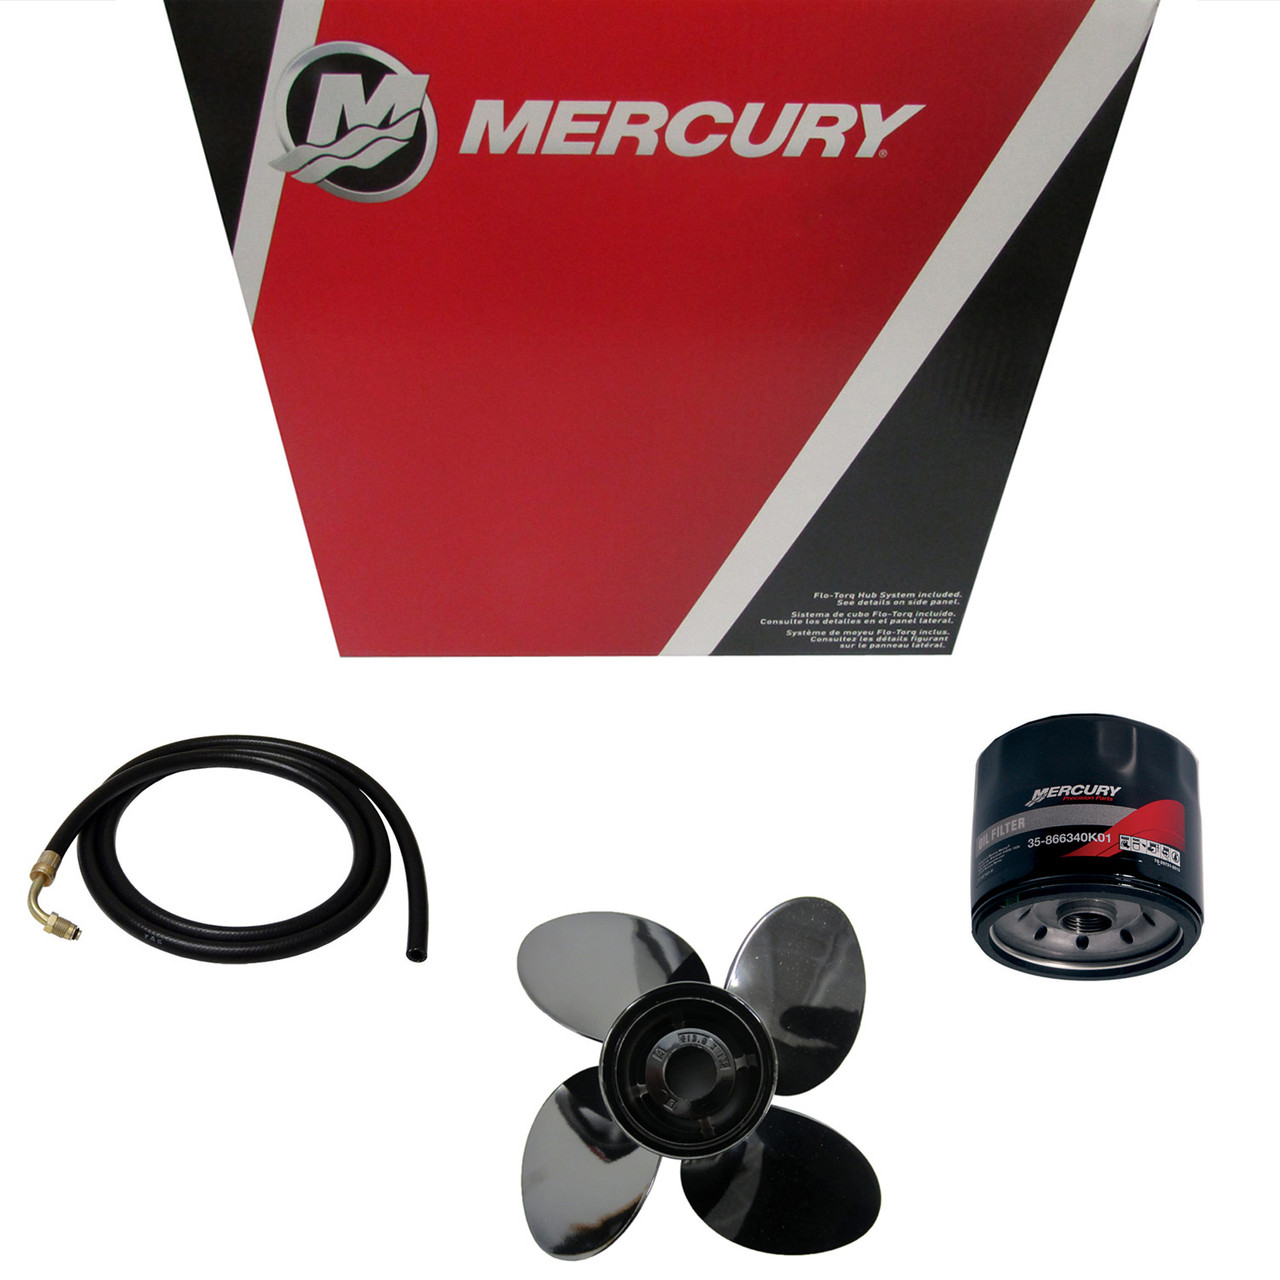 Mercury Marine / Mercruiser New OEM Clamp, 893342